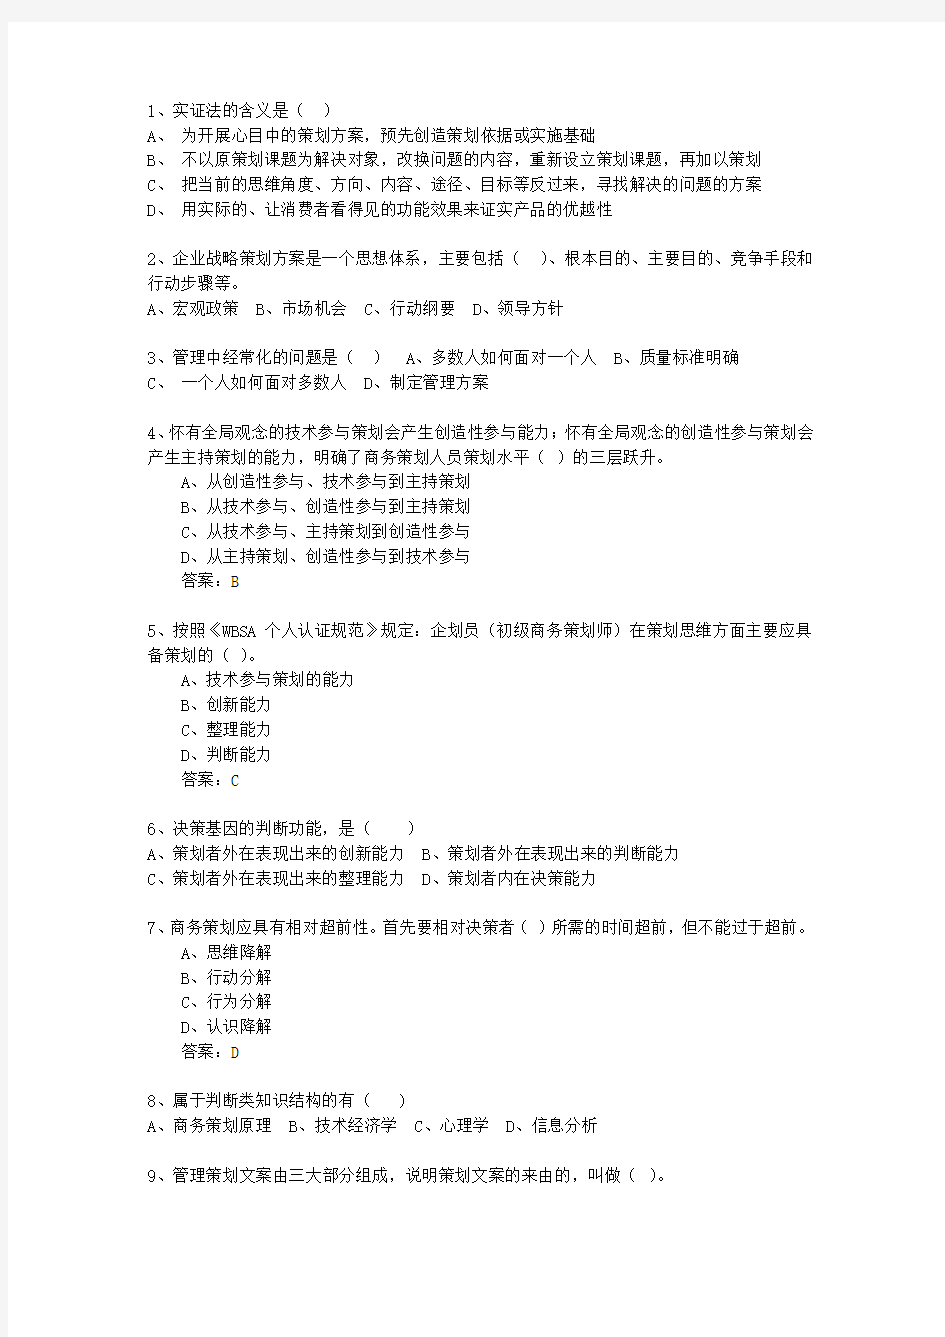 2010年台湾省市场营销策划师最新考试试题库(完整版)